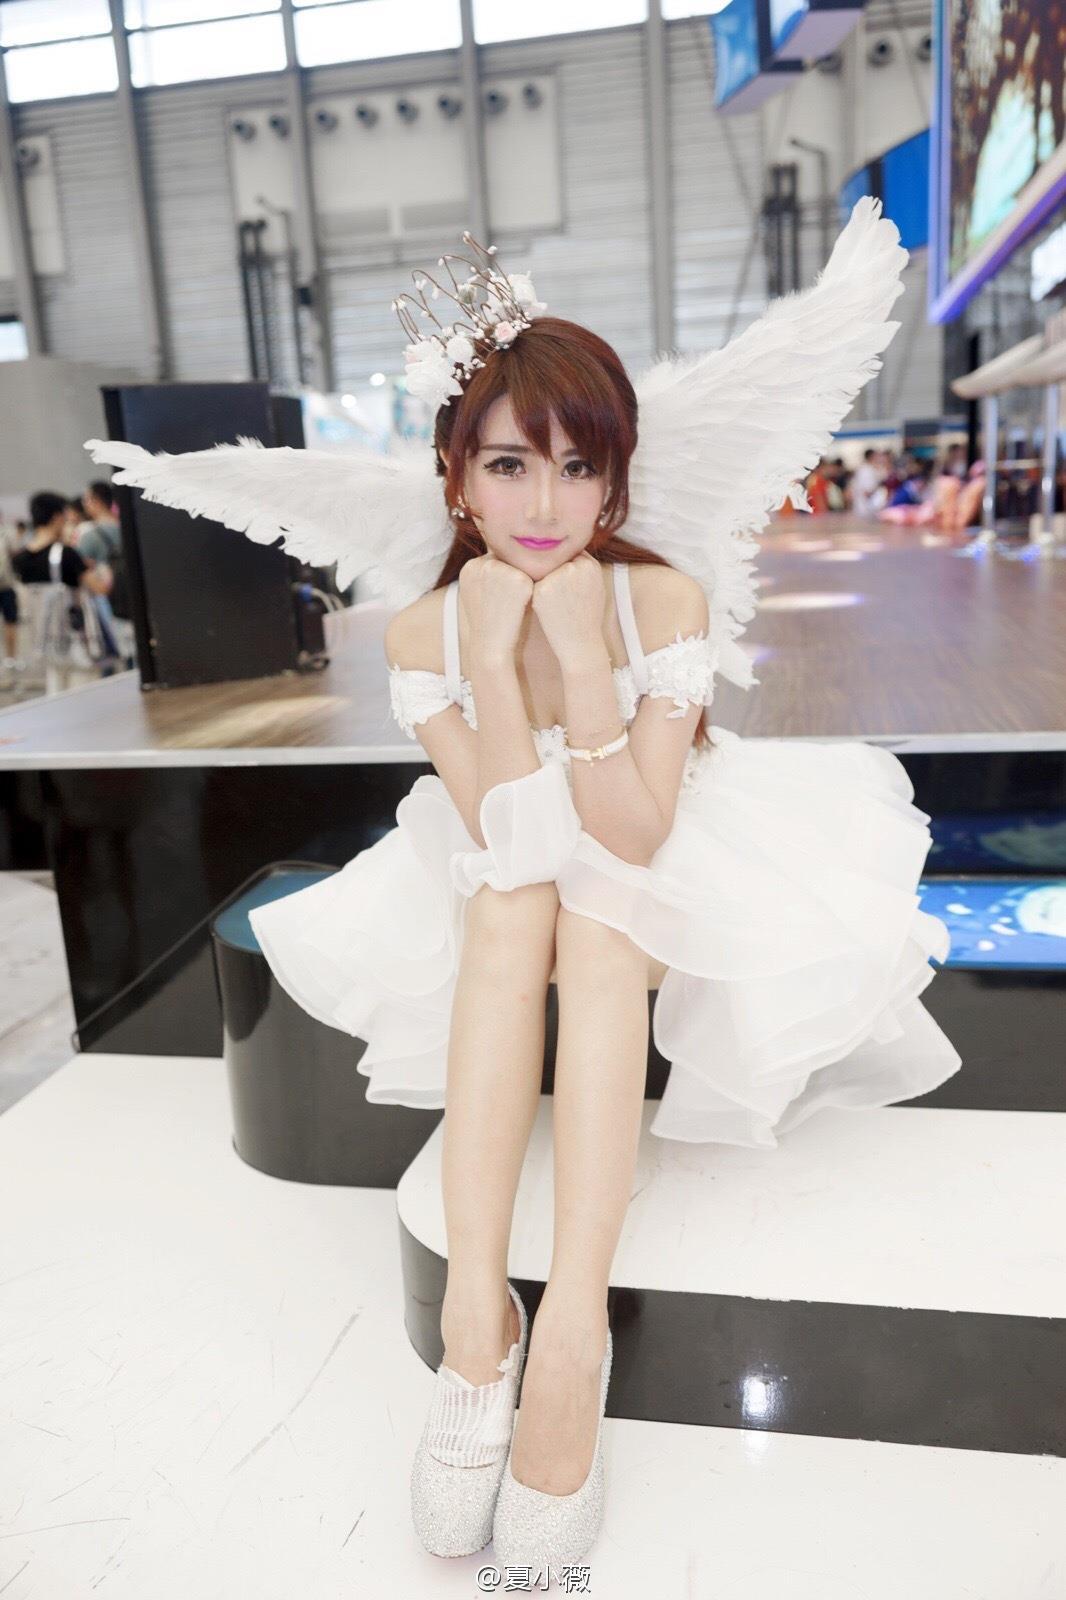 游戏展美女模特夏小薇天使之翼装,游戏展美女模特夏小薇天使之翼装